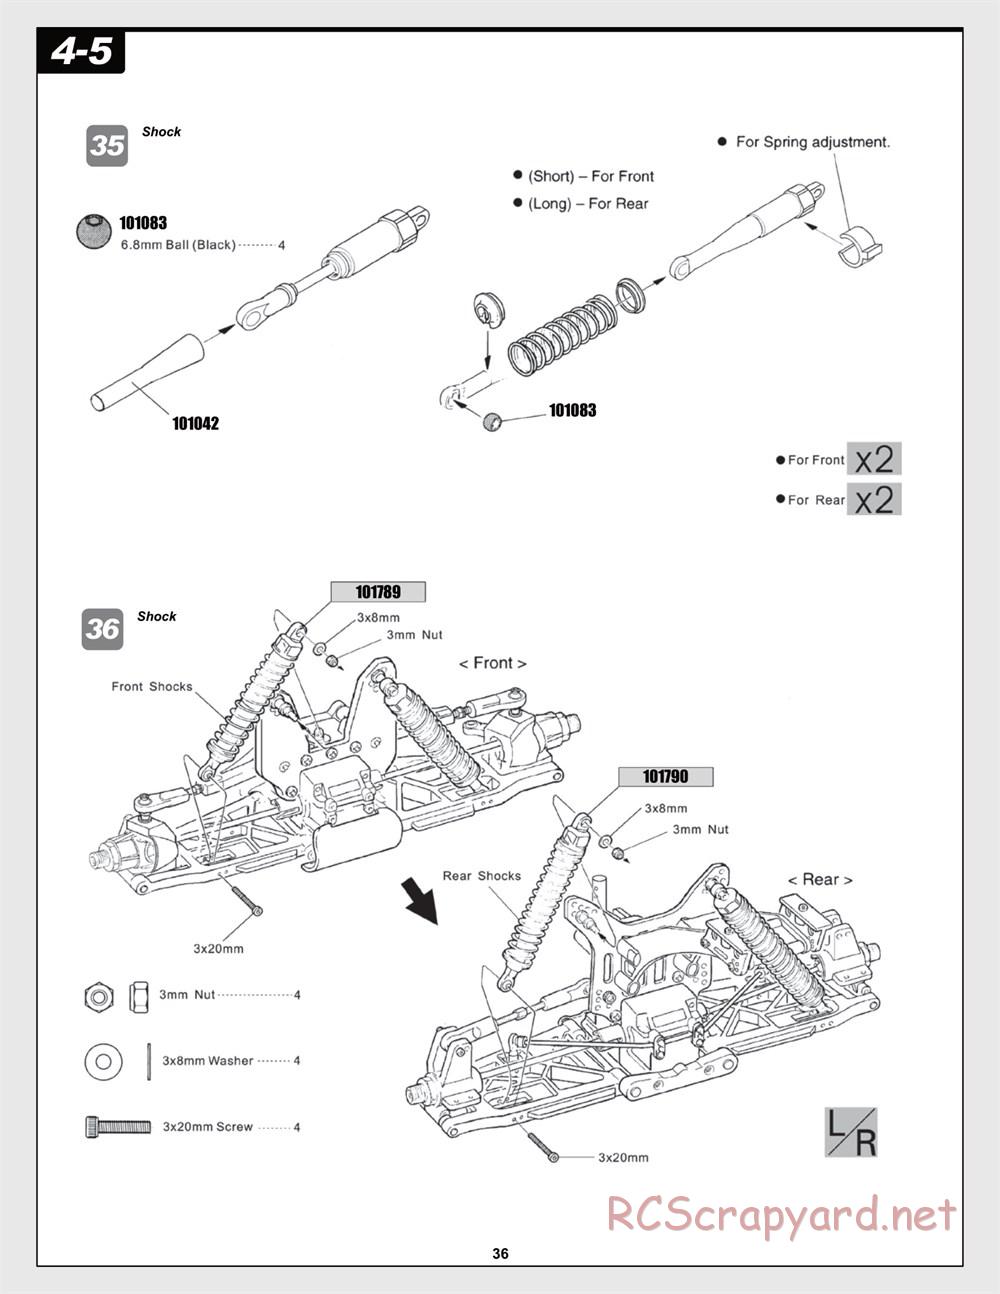 HPI - Trophy Flux Buggy - Manual - Page 36